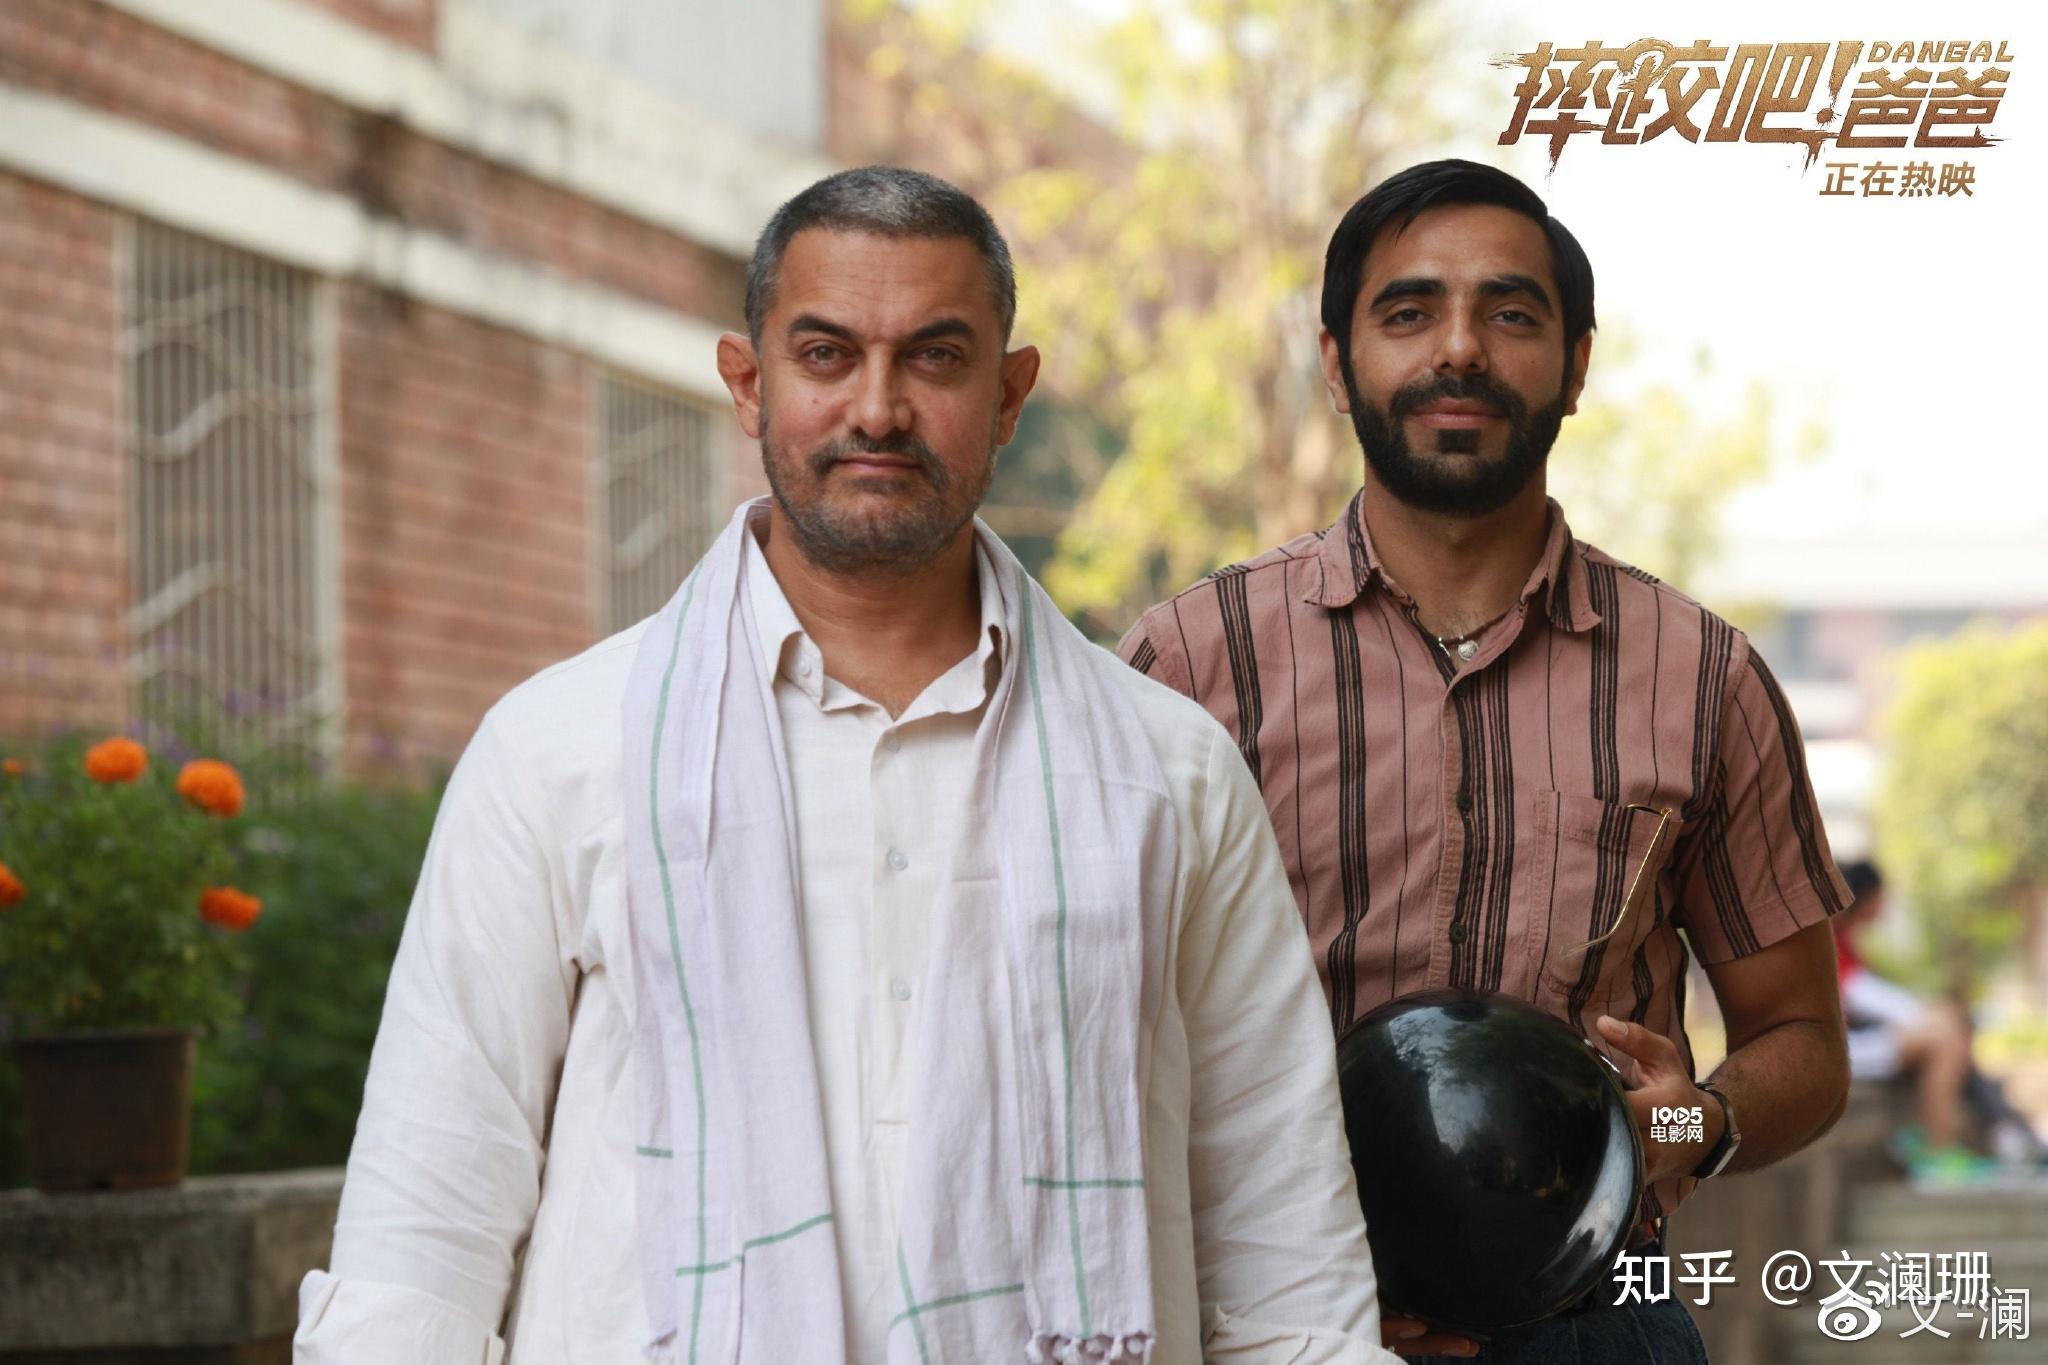 《摔跤吧!爸爸》征服中国观众 Indian film 'Dangal' becomes a talking point in China ...